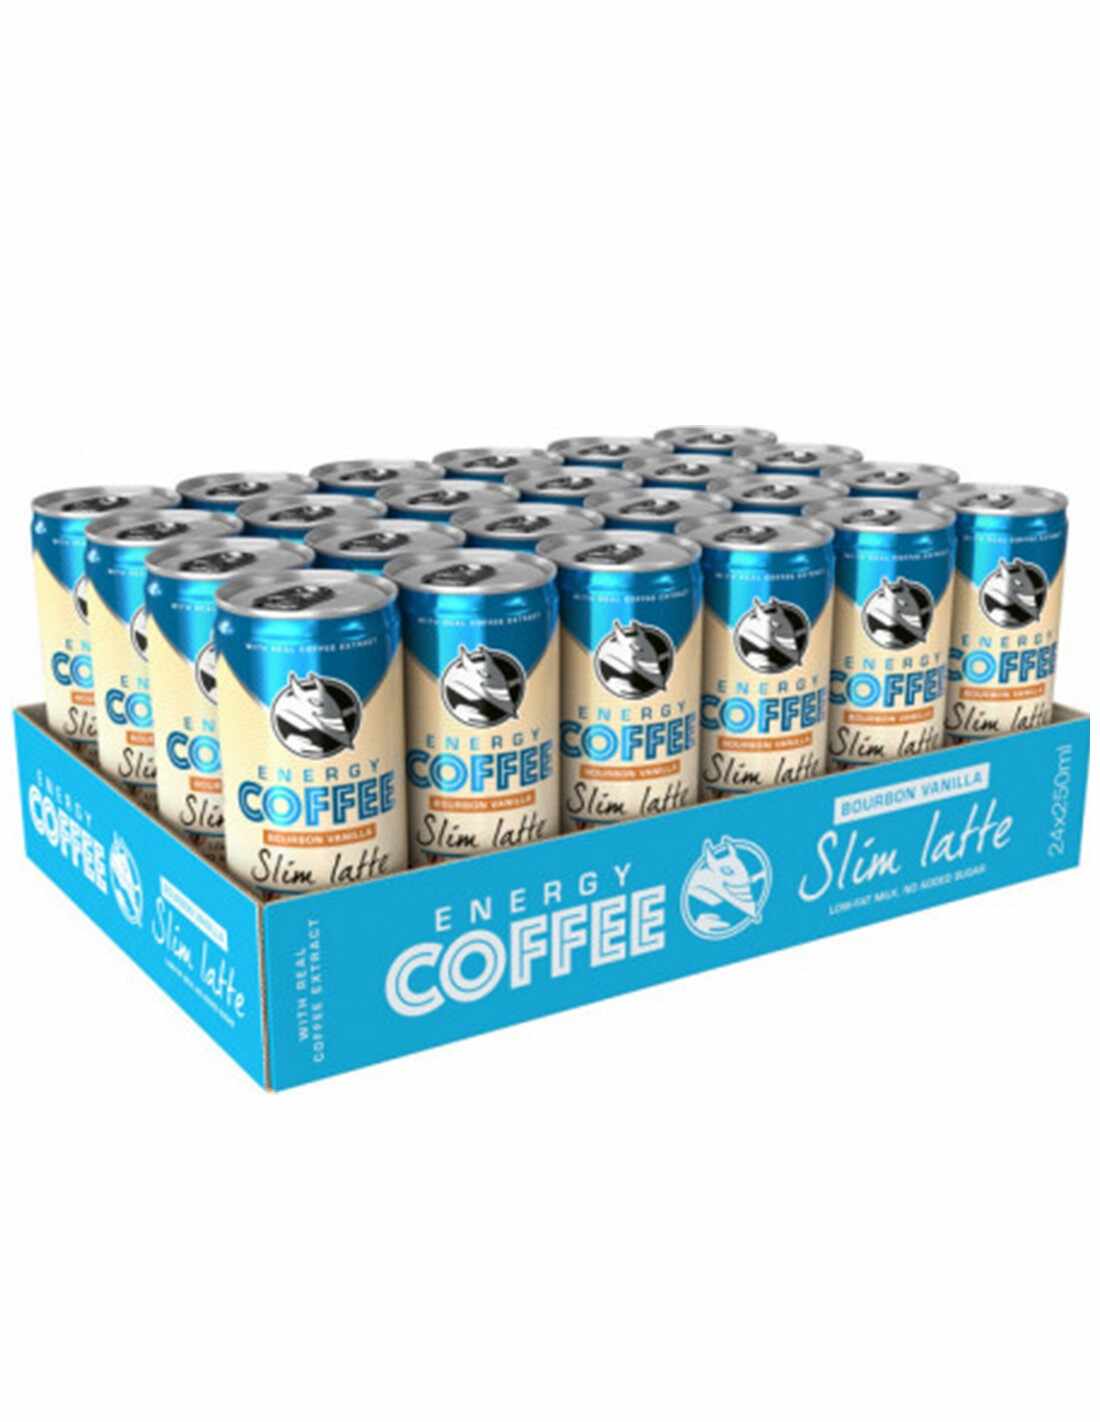 Bax 24 bucati Energizant Hell Energy Coffee Slim Latte, 0.25L